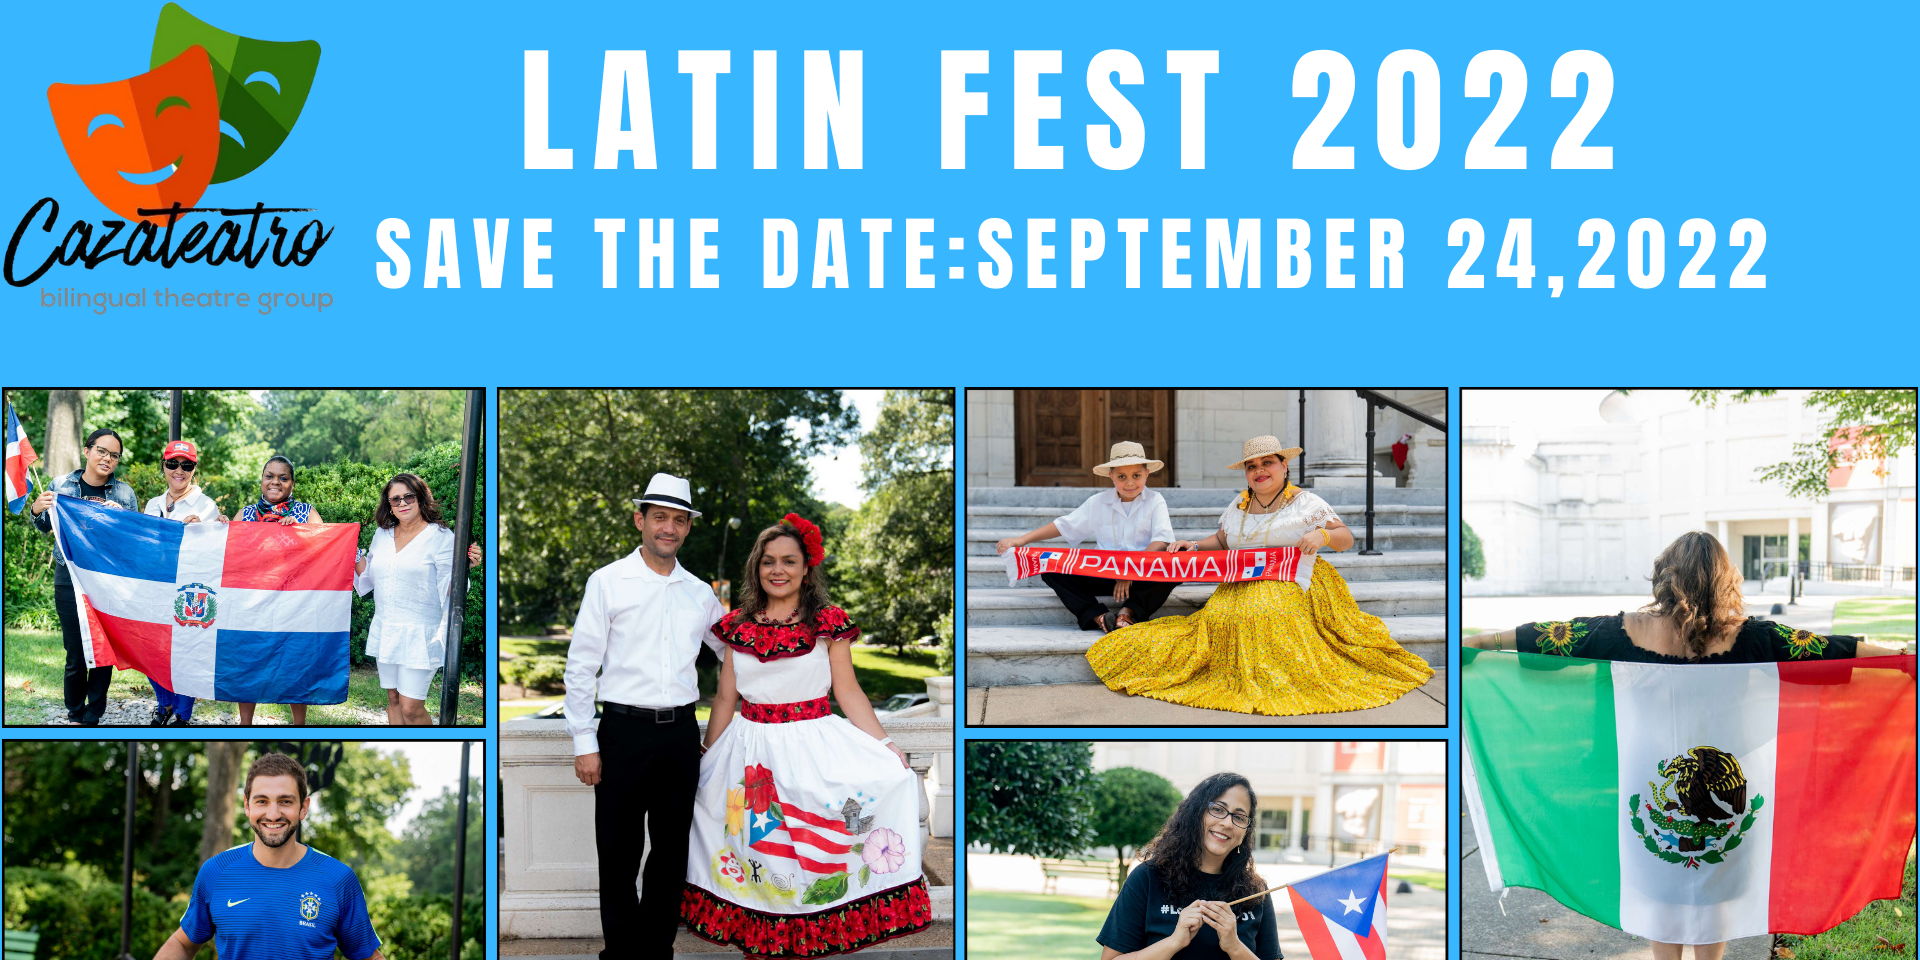 Latin Fest 2022 promotional image